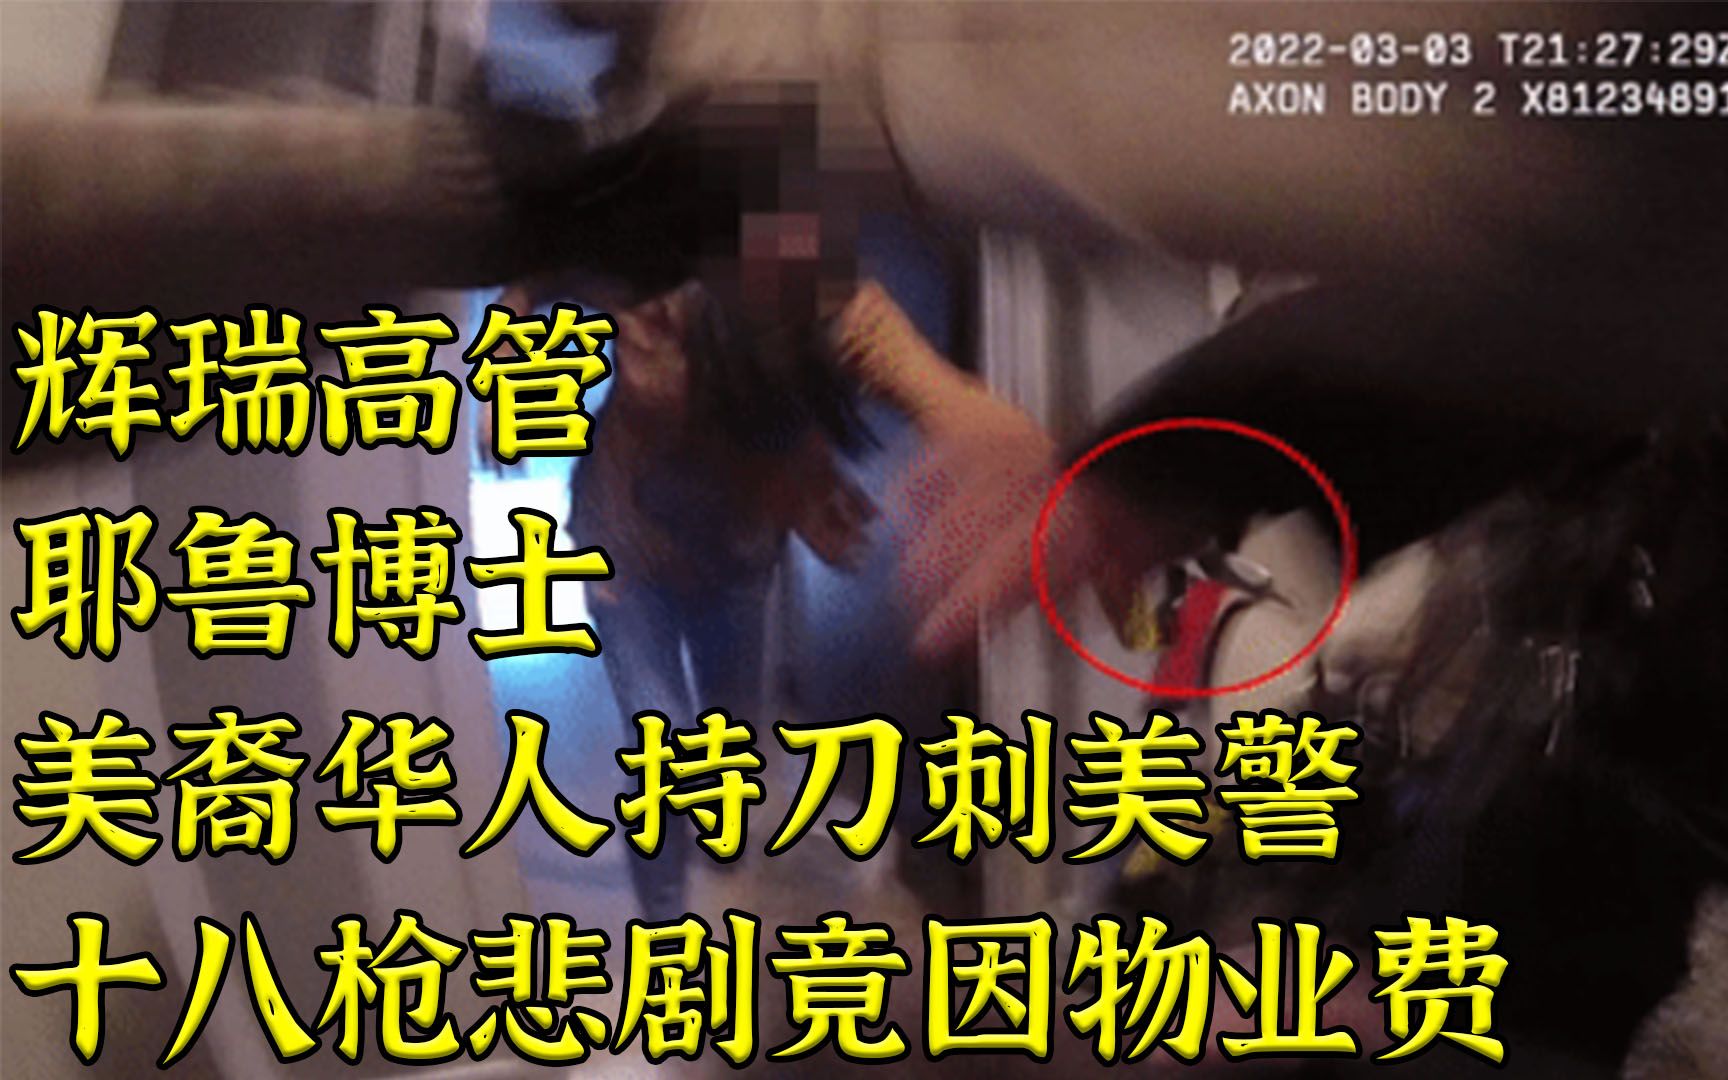 华裔耶鲁女博士抽刀向美警 被打十八枪